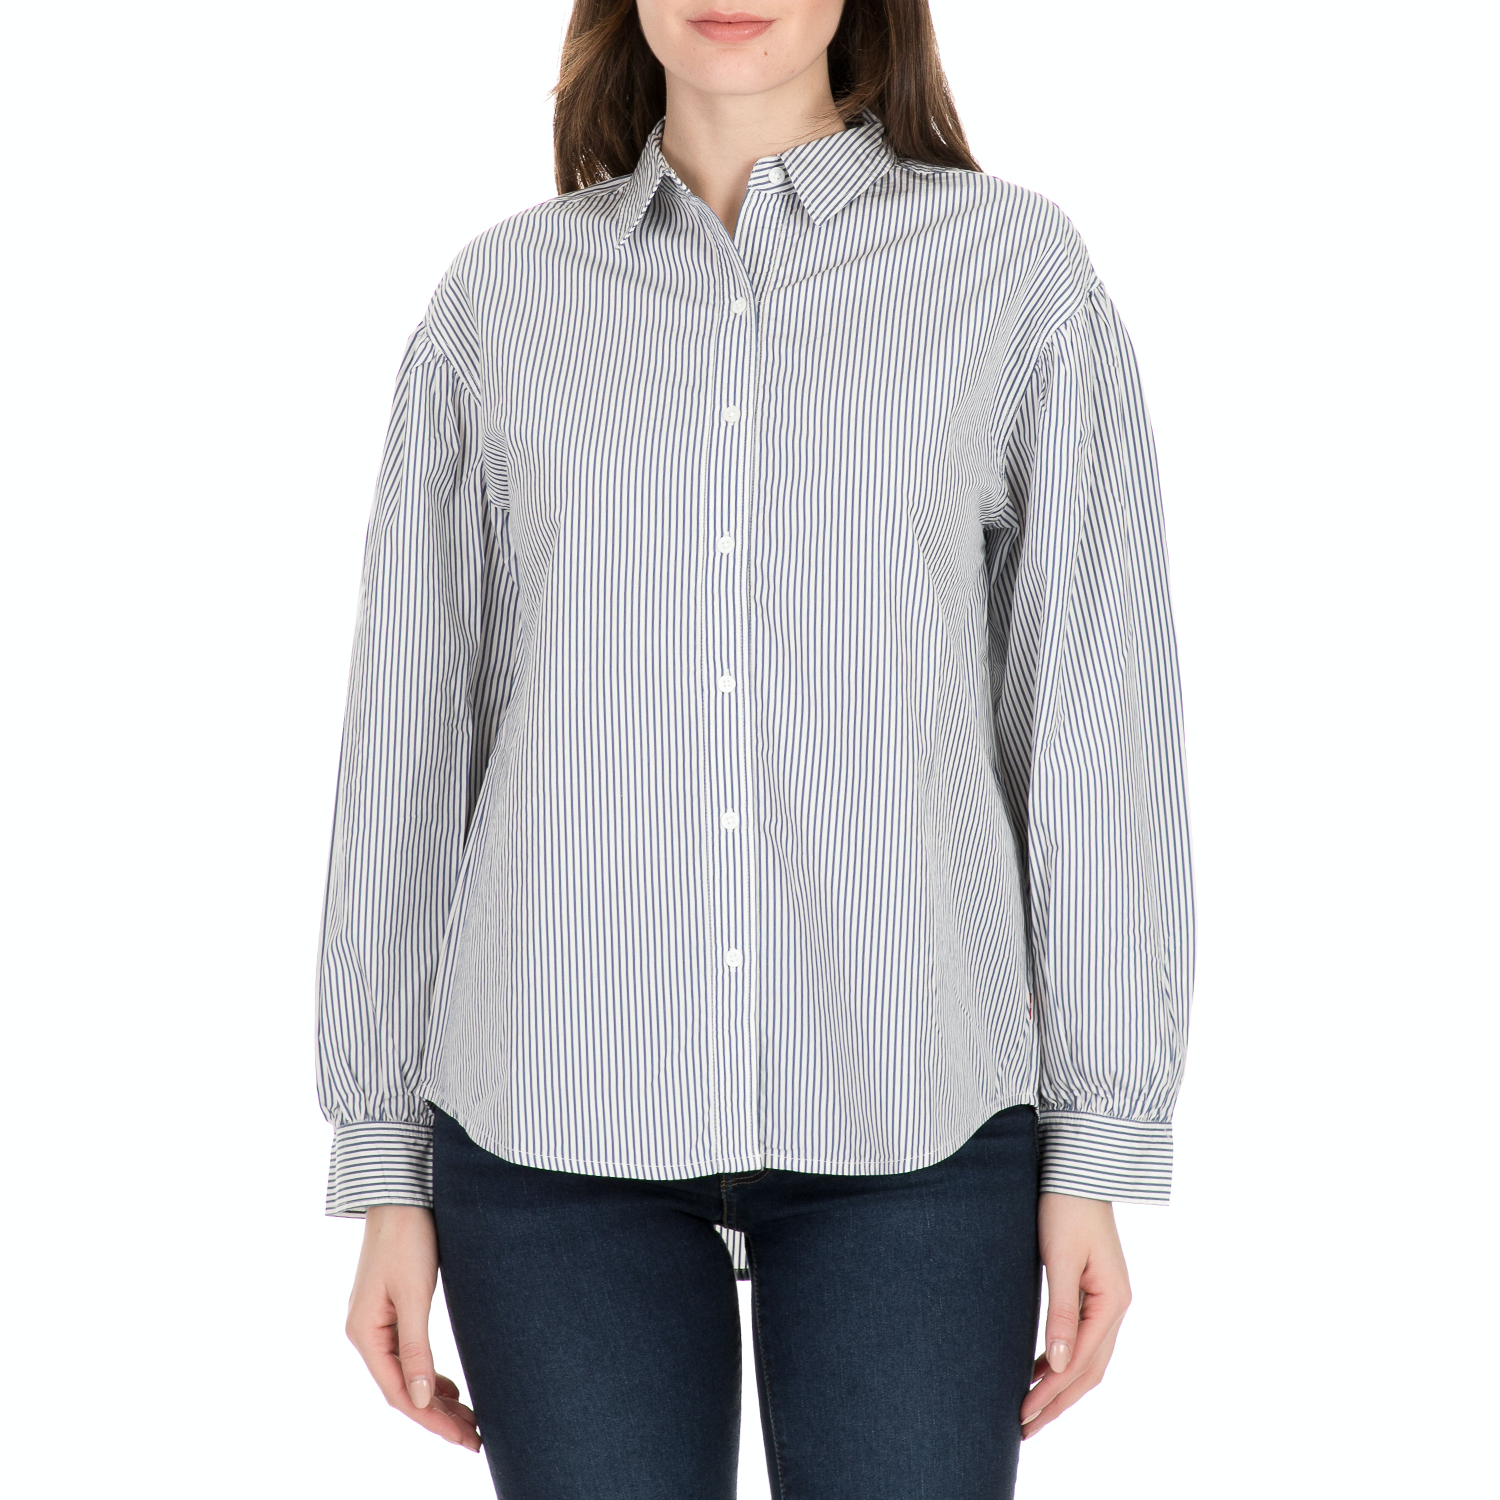 Γυναικεία/Ρούχα/Πουκάμισα/Μακρυμάνικα LEVI'S - Γυναικείο πουκάμισο LEVI'S DIANA μπλε λευκό